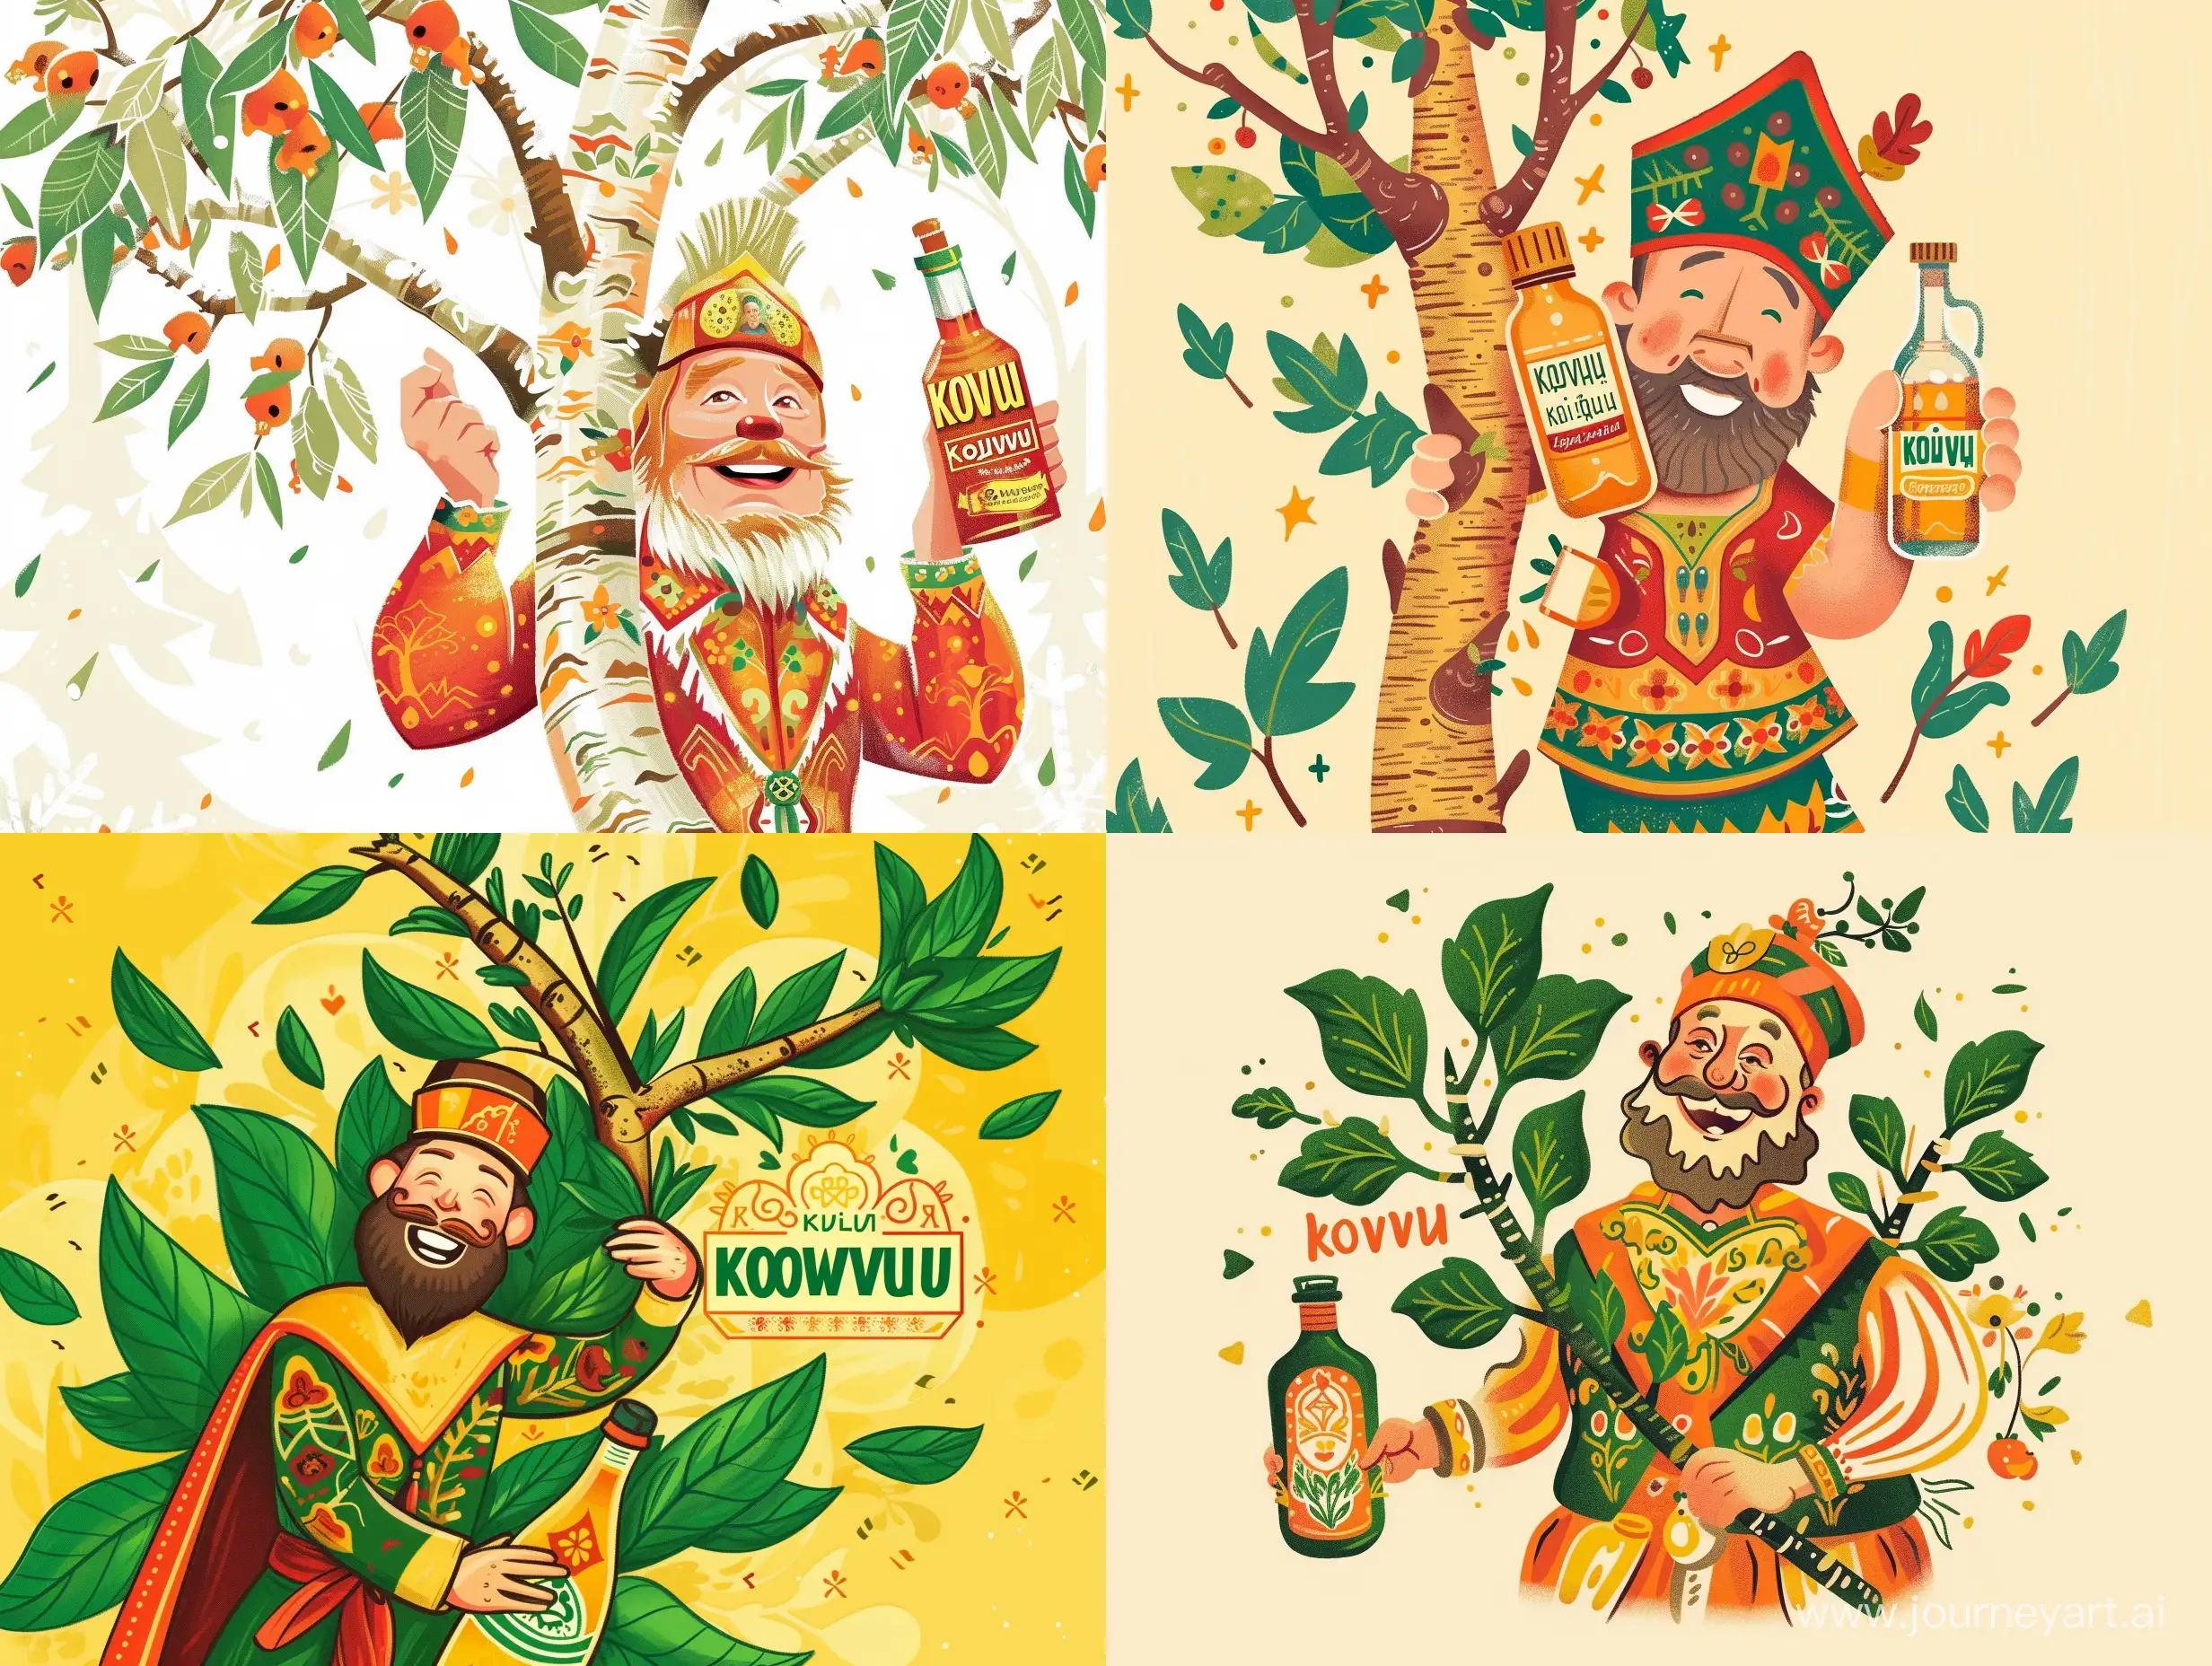 "Koivu"- березовый сок, на логотипе изображена береза которую обнимает веселый русский мужчина в национальном костюме, у него в руке квас фирмы  "Koivu"